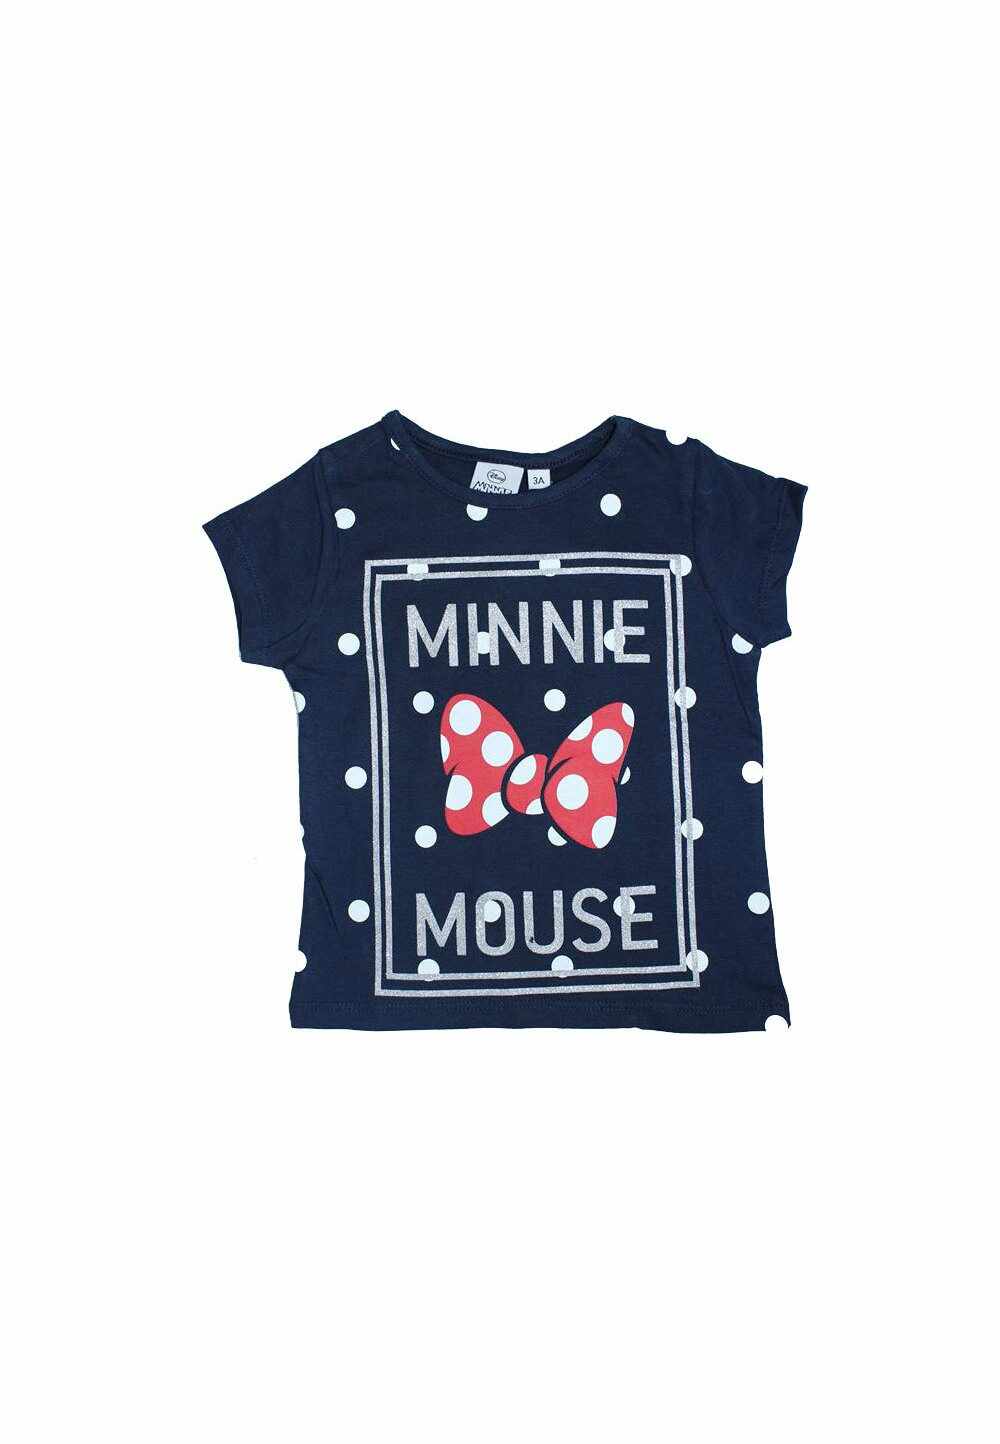 Tricou, bluemarin cu buline, Minnie Mouse